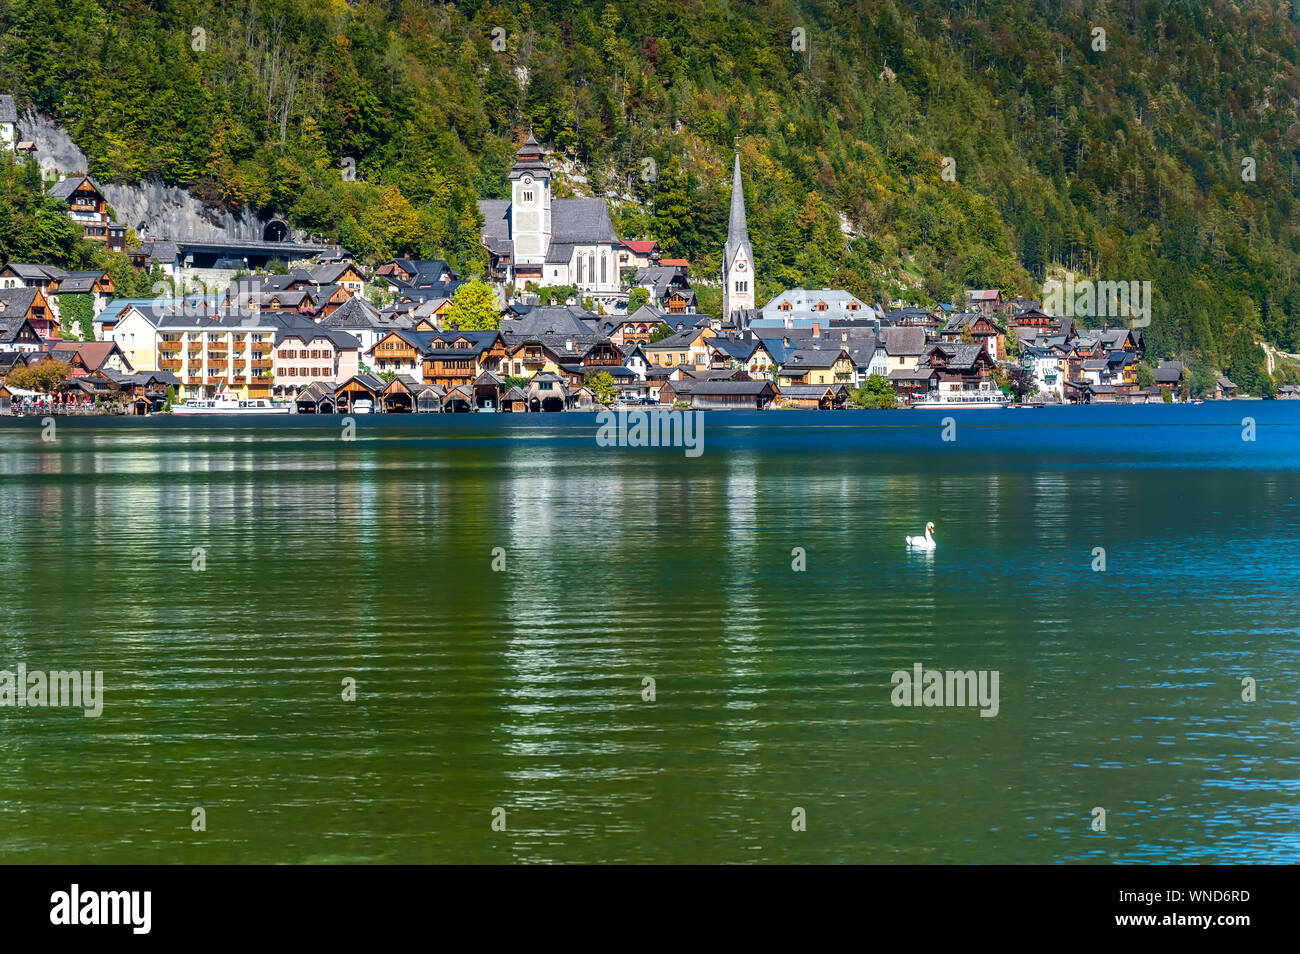 Hallstatt, Austria. Popular town on alpine lake Hallstatter See in Austrian Alps mountains in autumn Stock Photo